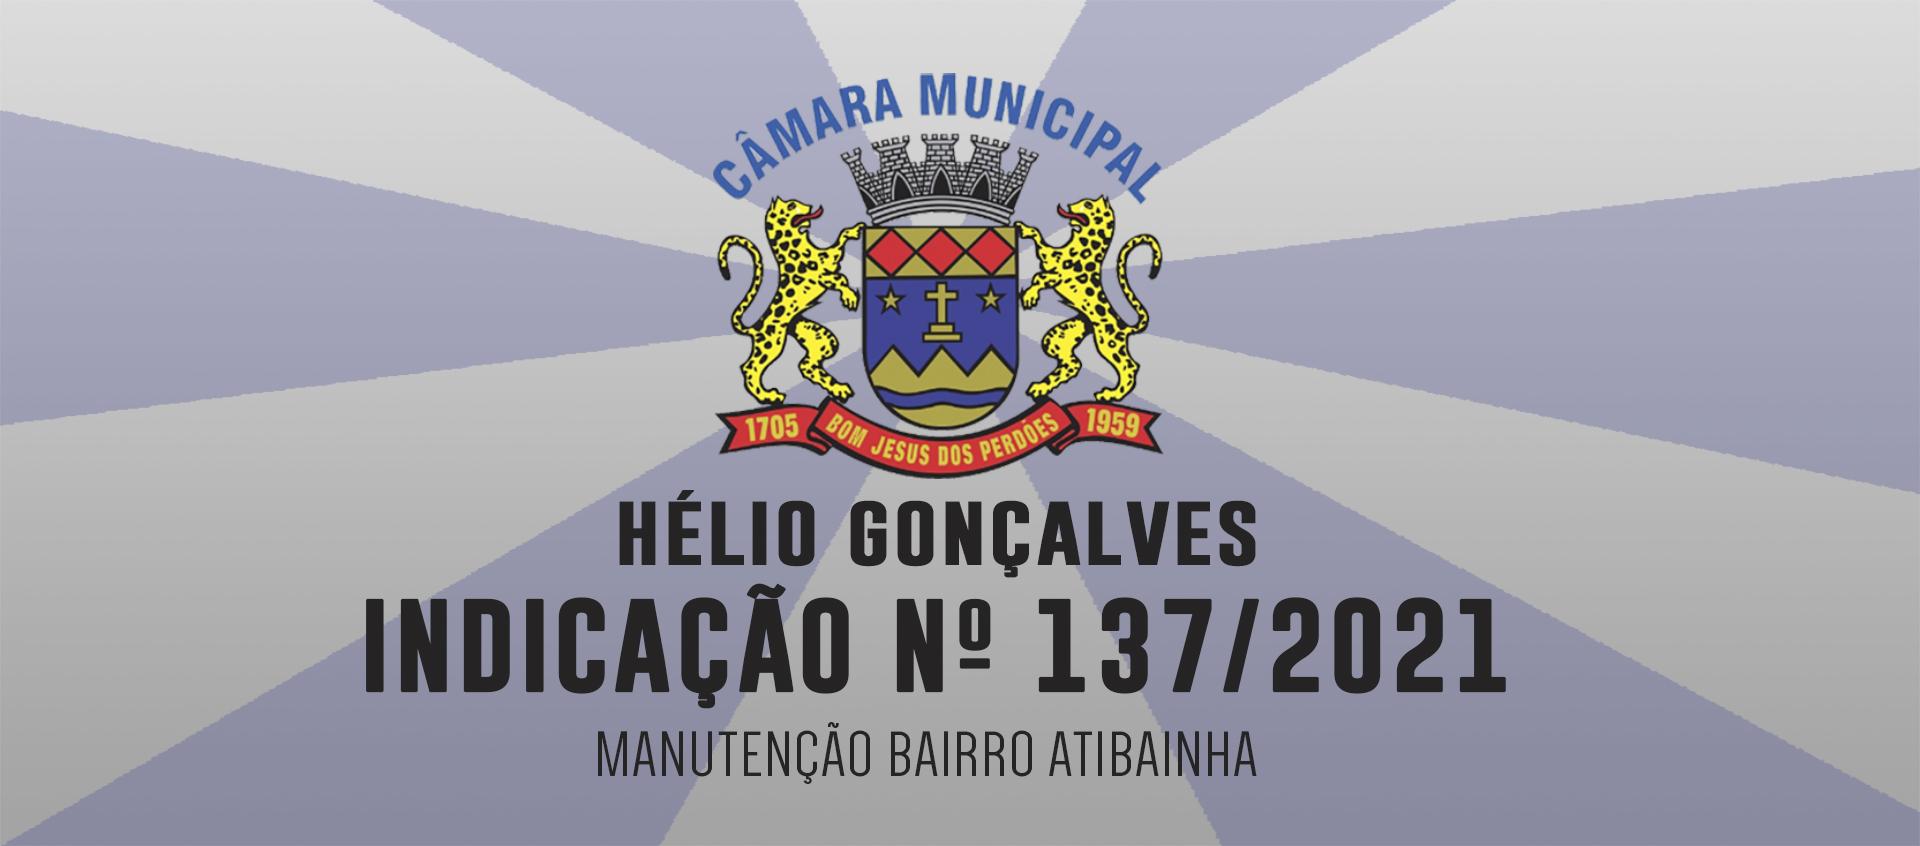 Indicação 137/2021 - Manutenção Bairro Atibainha - Hélio